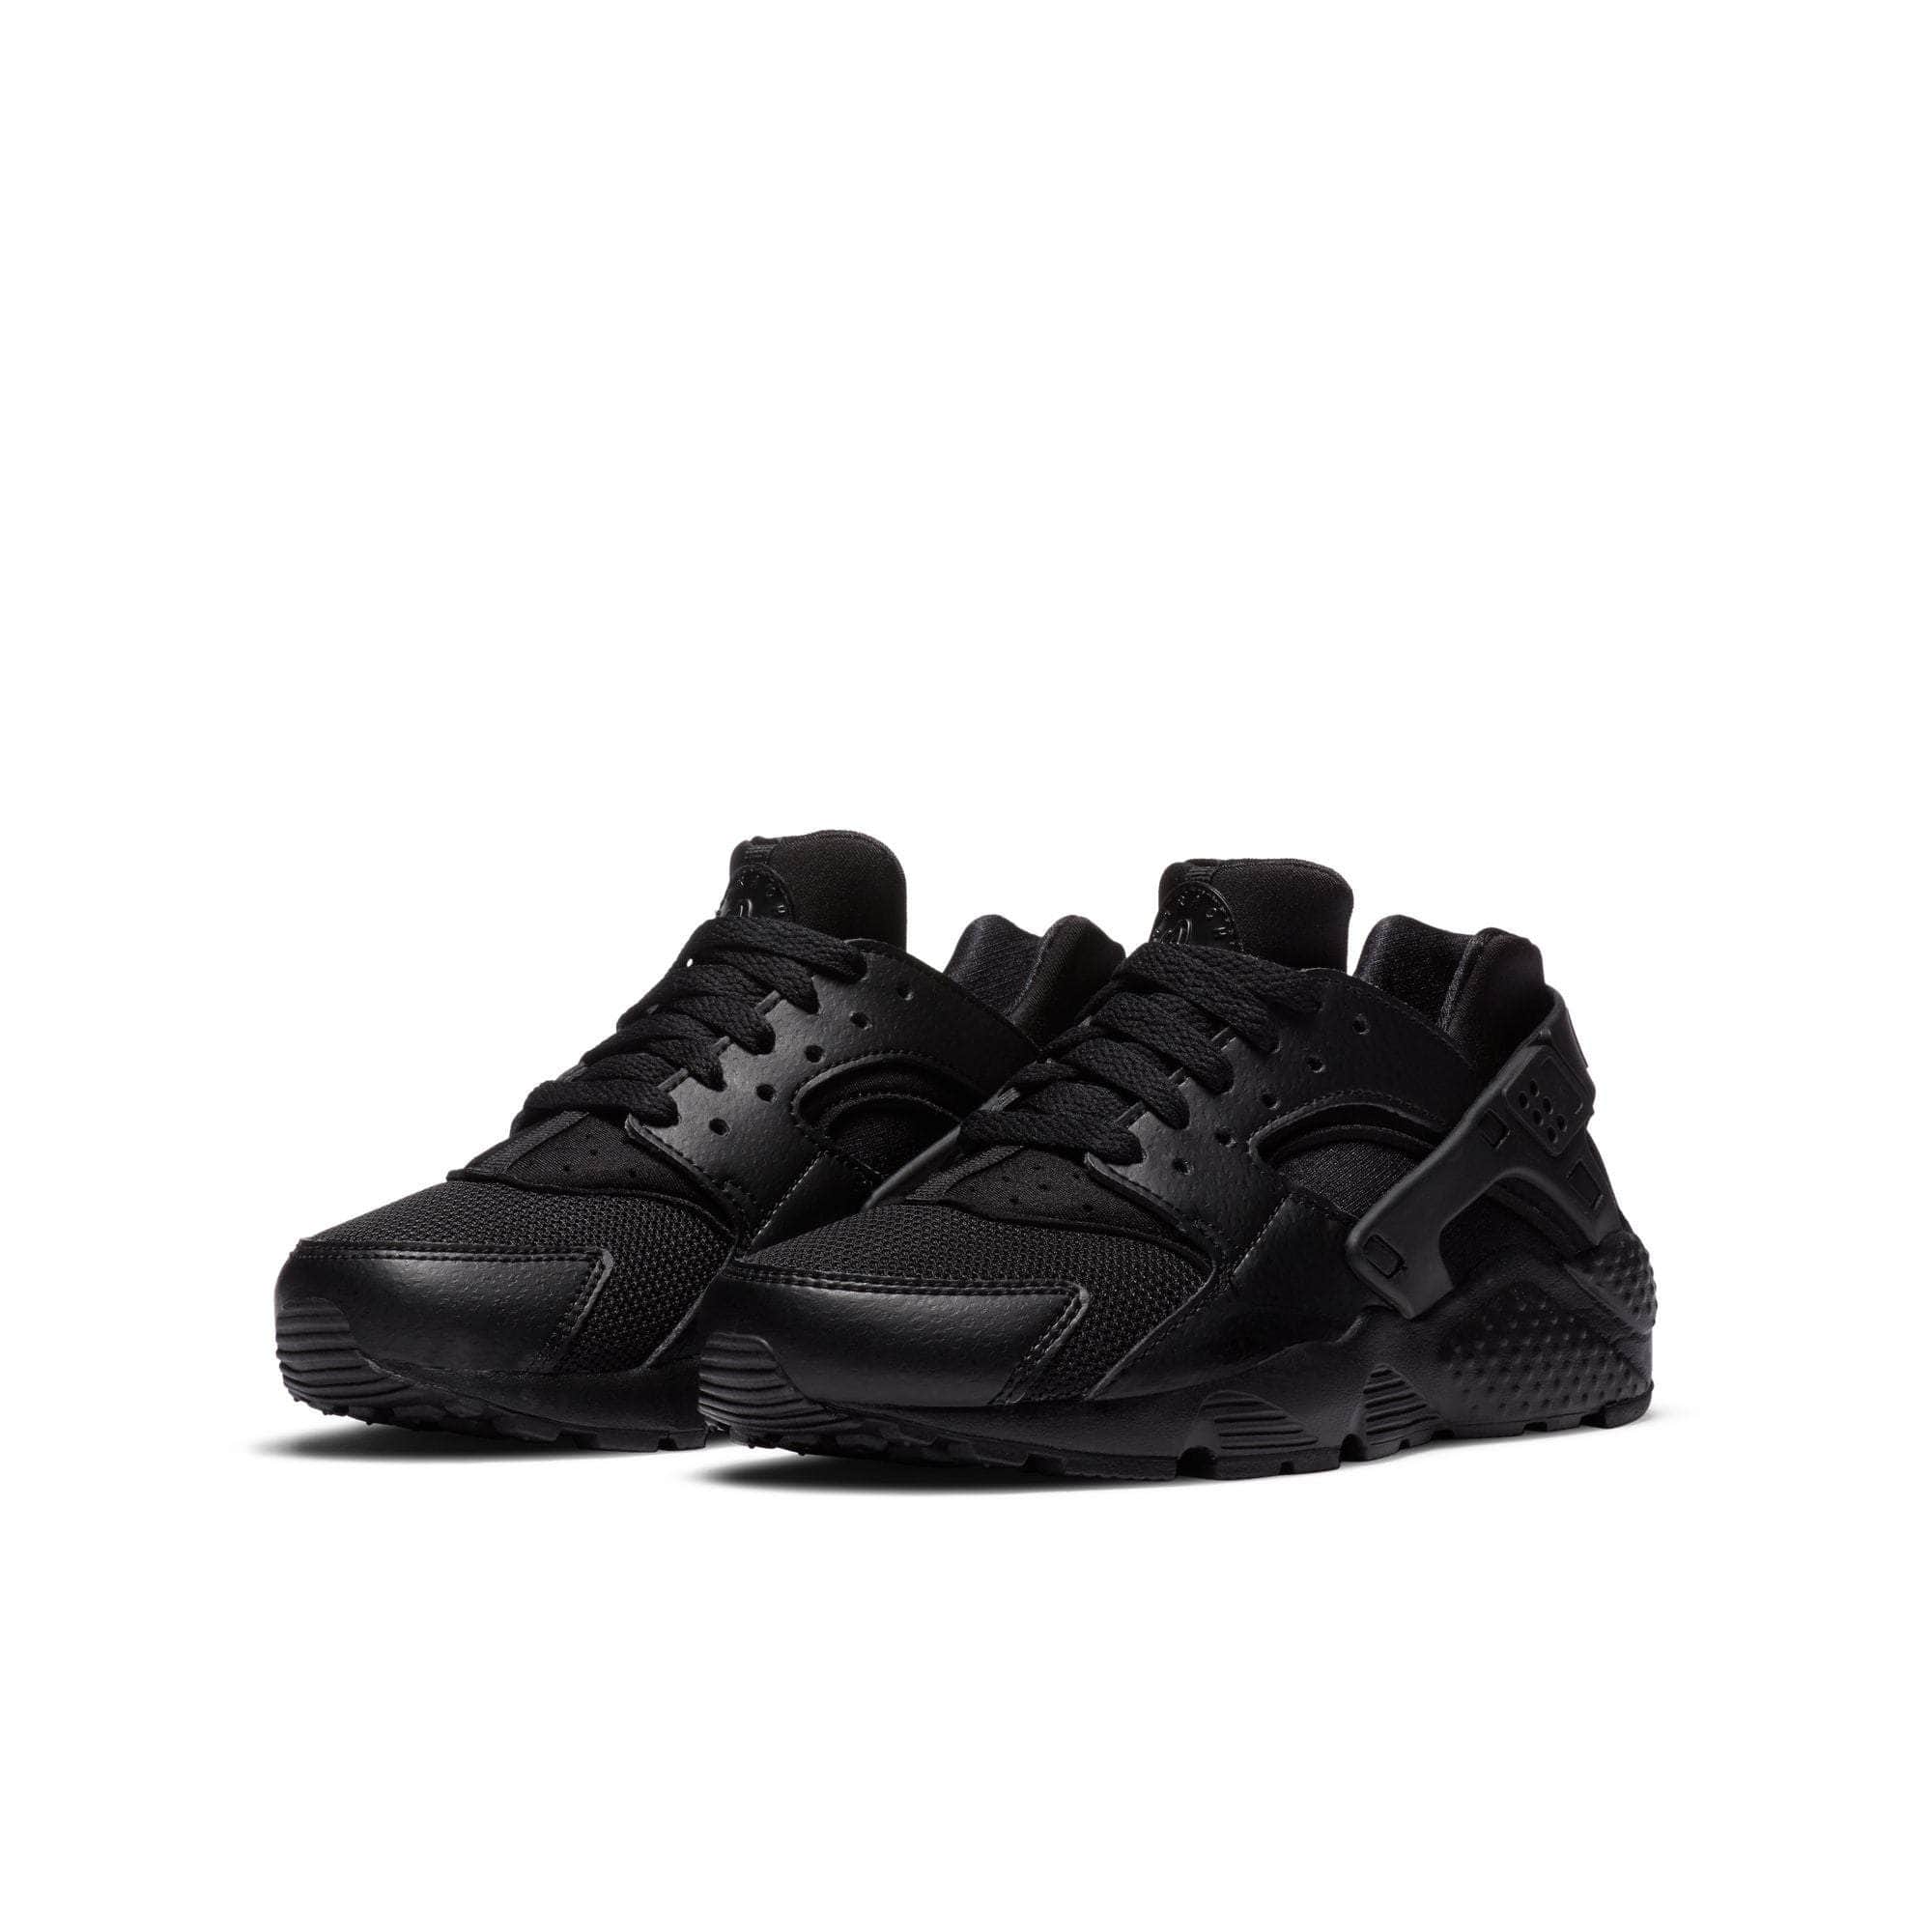 Nike Air Huarache Run Triple Black (2019) (GS) Kids' - 654275-016 - GB